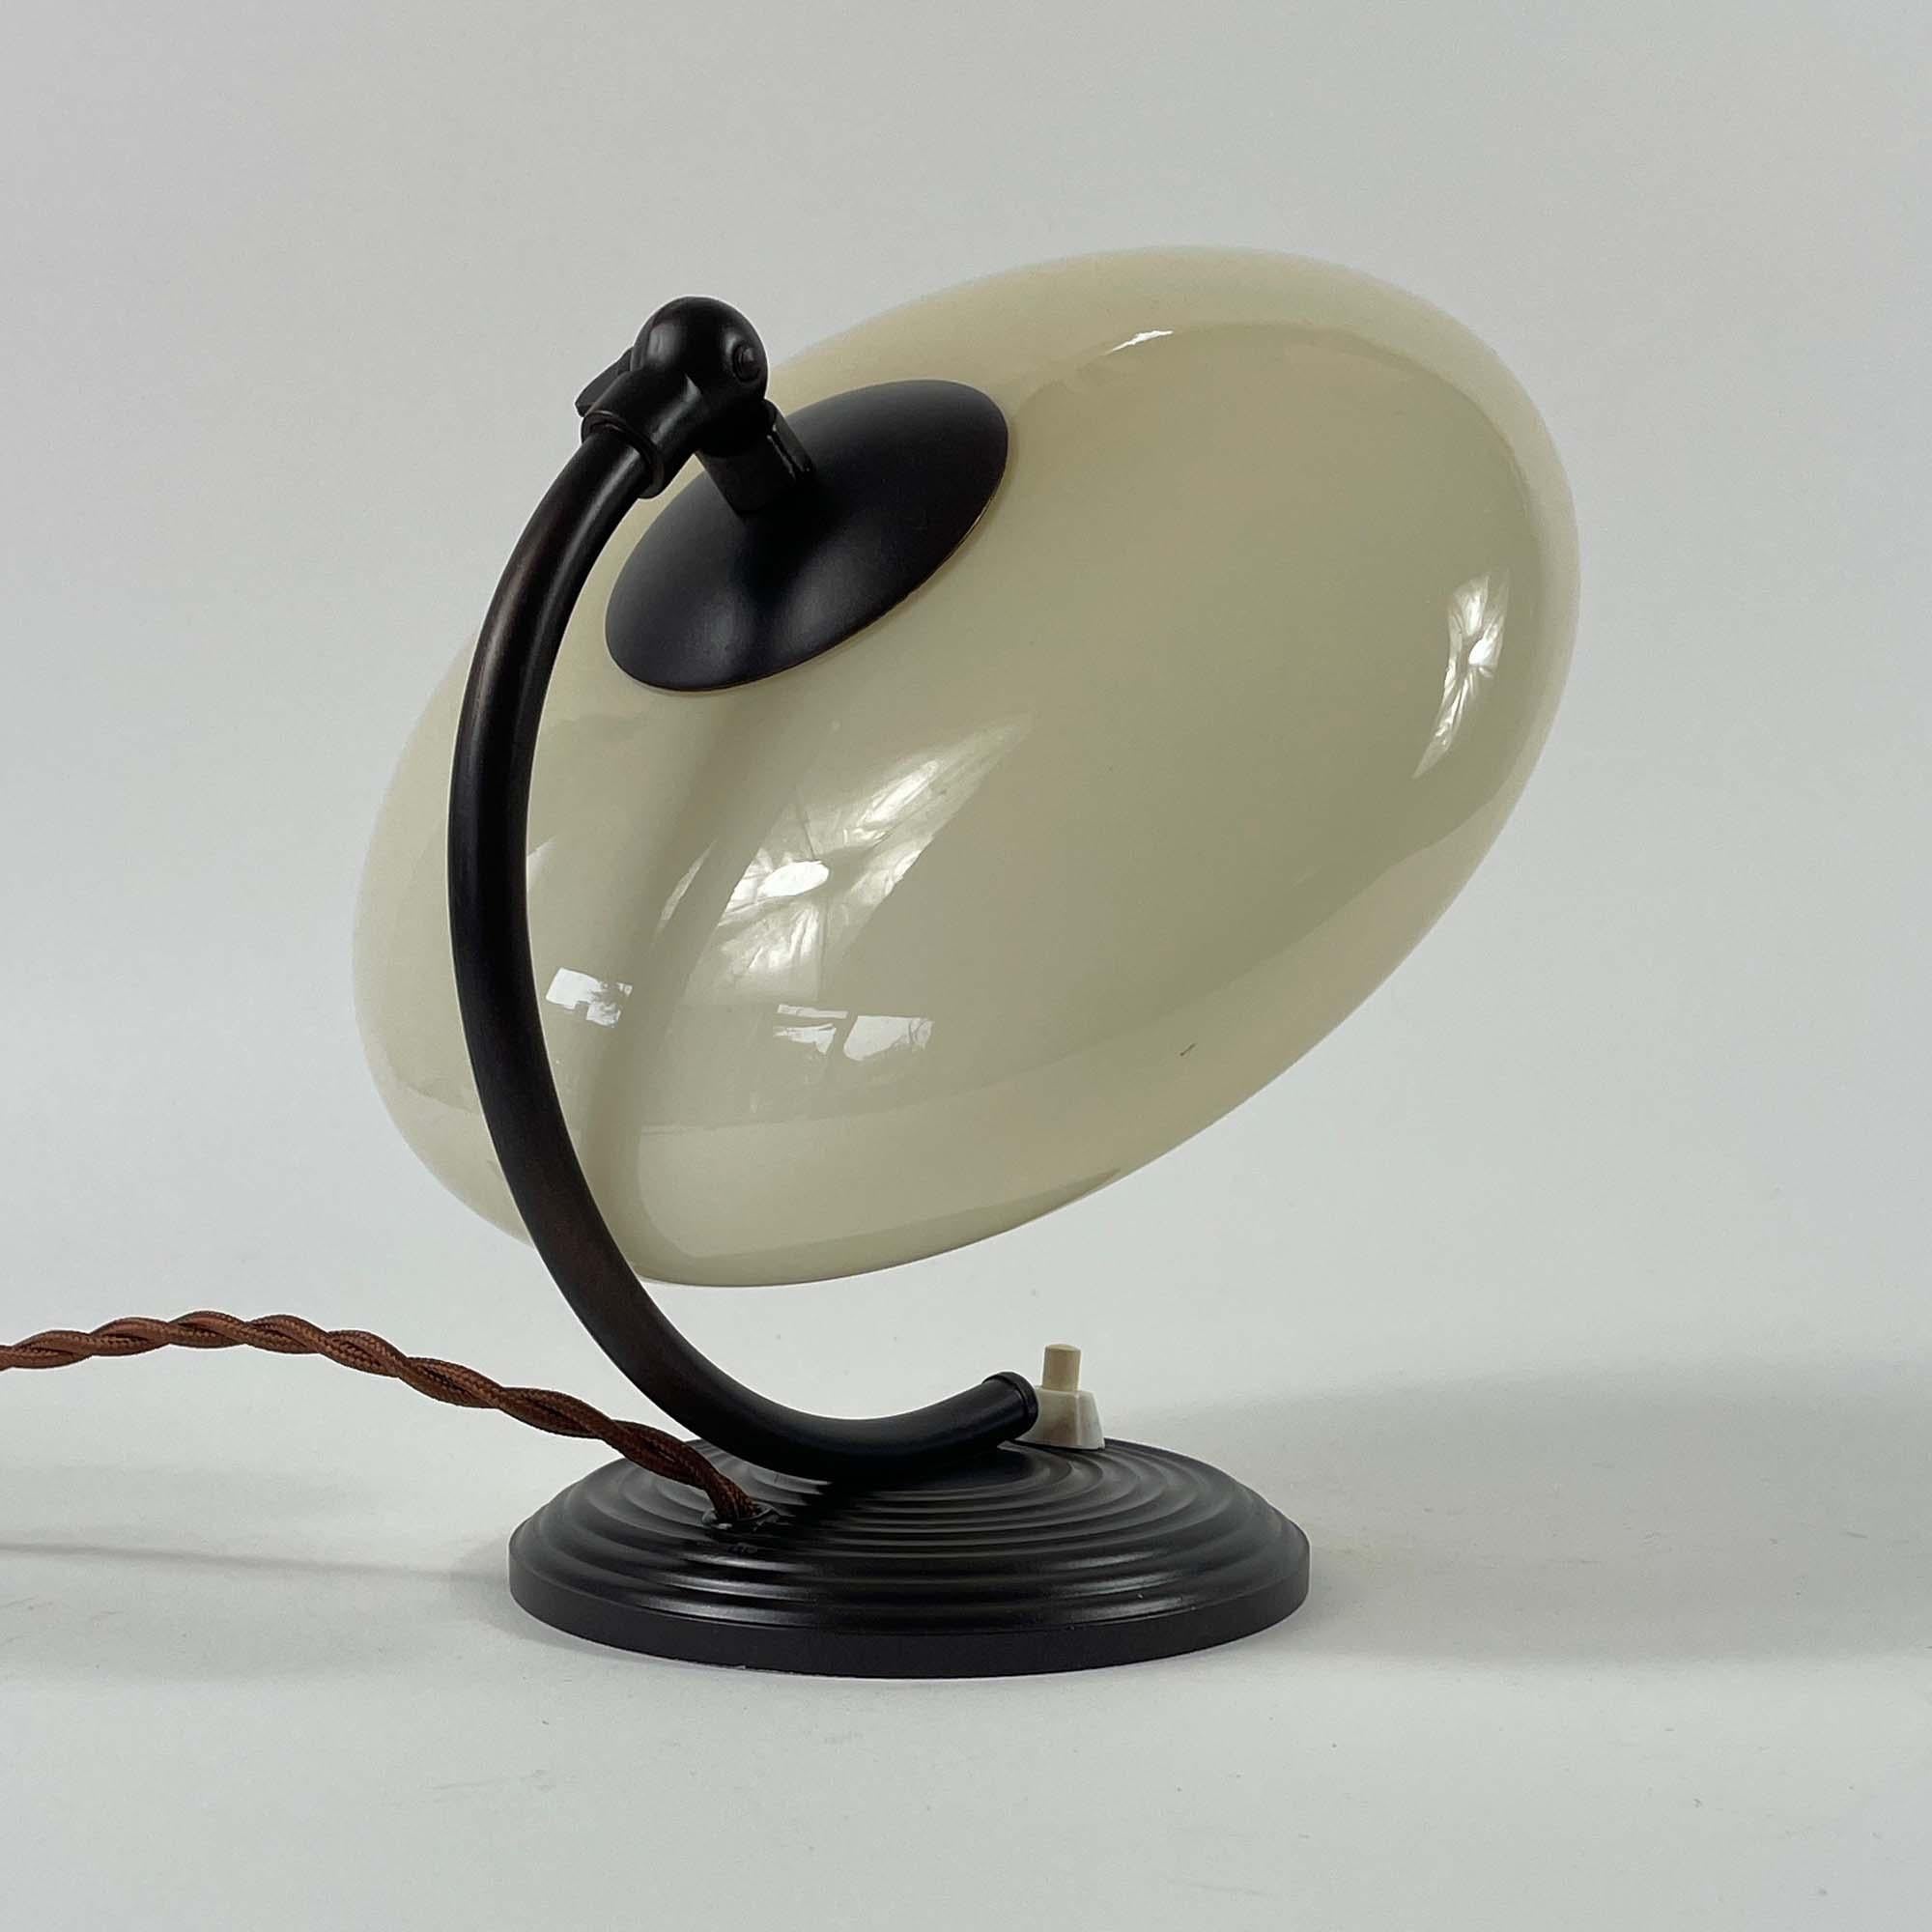 Diese Art-Déco-Tischleuchte oder Nachttischlampe wurde in Deutschland während der Bauhaus-Periode in den 1920er bis 1930er Jahren entworfen und hergestellt.

Sie verfügt über einen UFO-förmigen Lampenschirm aus creme-/sandfarbenem Opalglas und